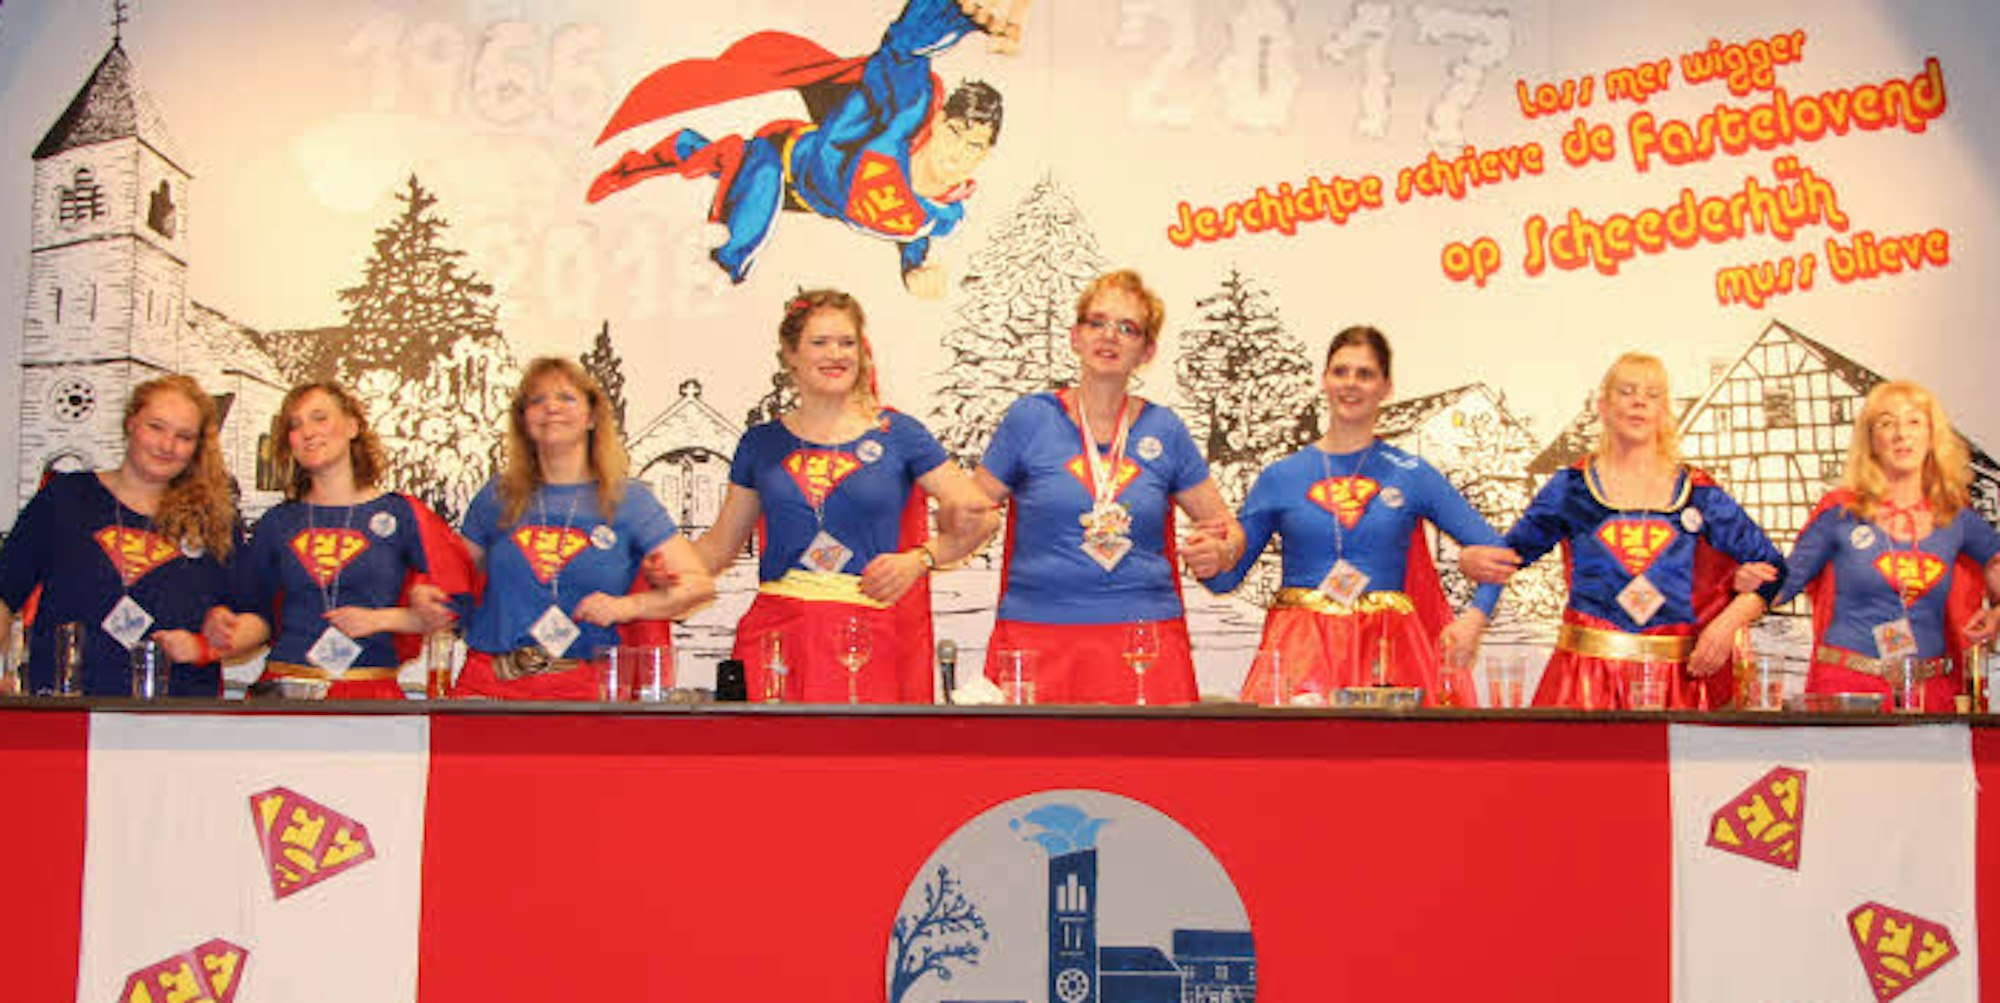 Als Superwomen hatten sich die gut gelaunten Damen der Fastelovendsfründe Scheederhüh bei ihrer ersten Sitzung verkleidet.